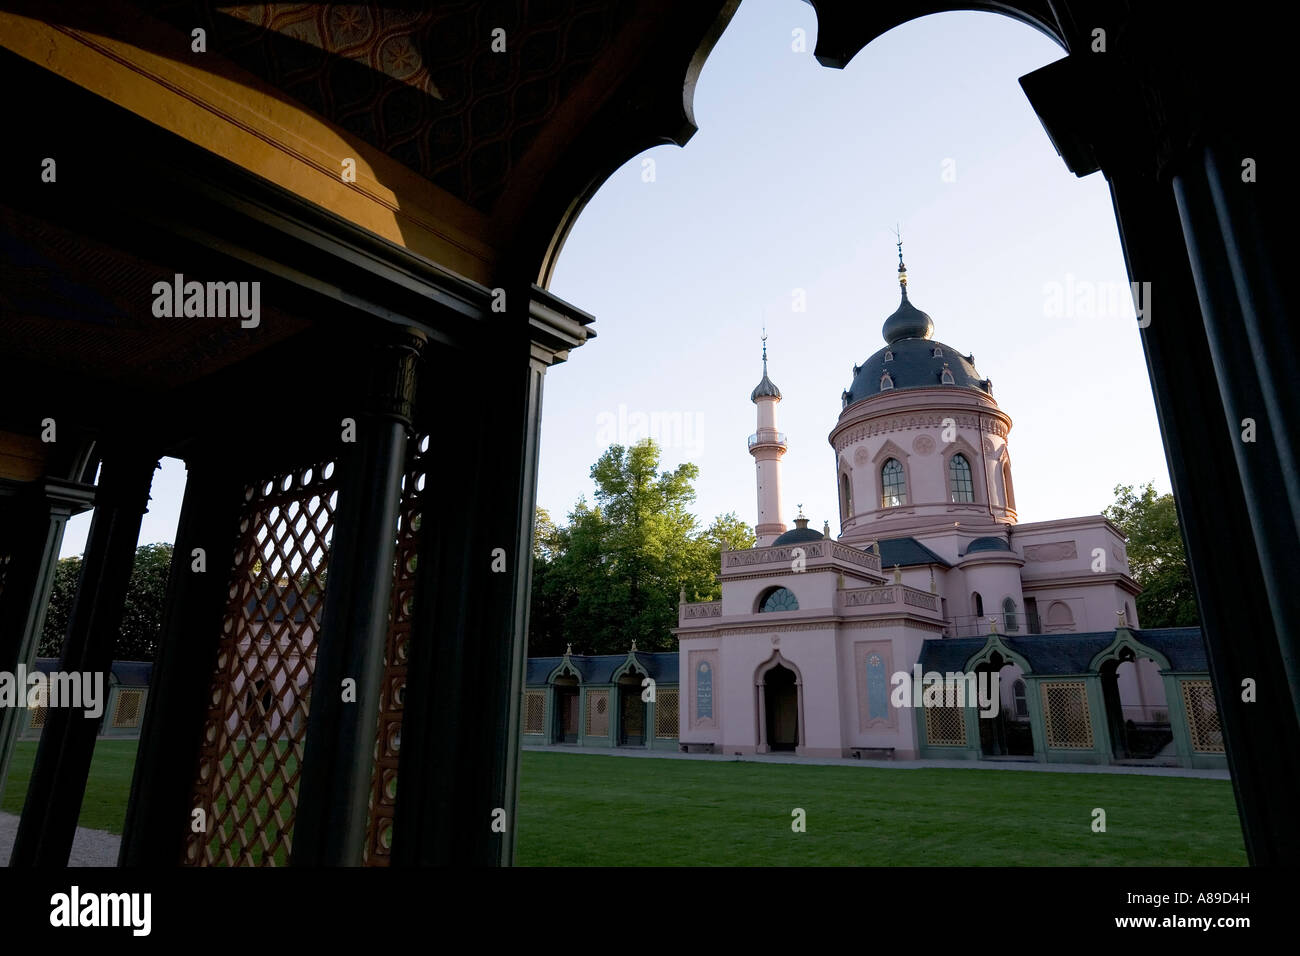 Turkish mosque, castle grounds Schwetzingen, Baden-Wuerttemberg, Germany Stock Photo